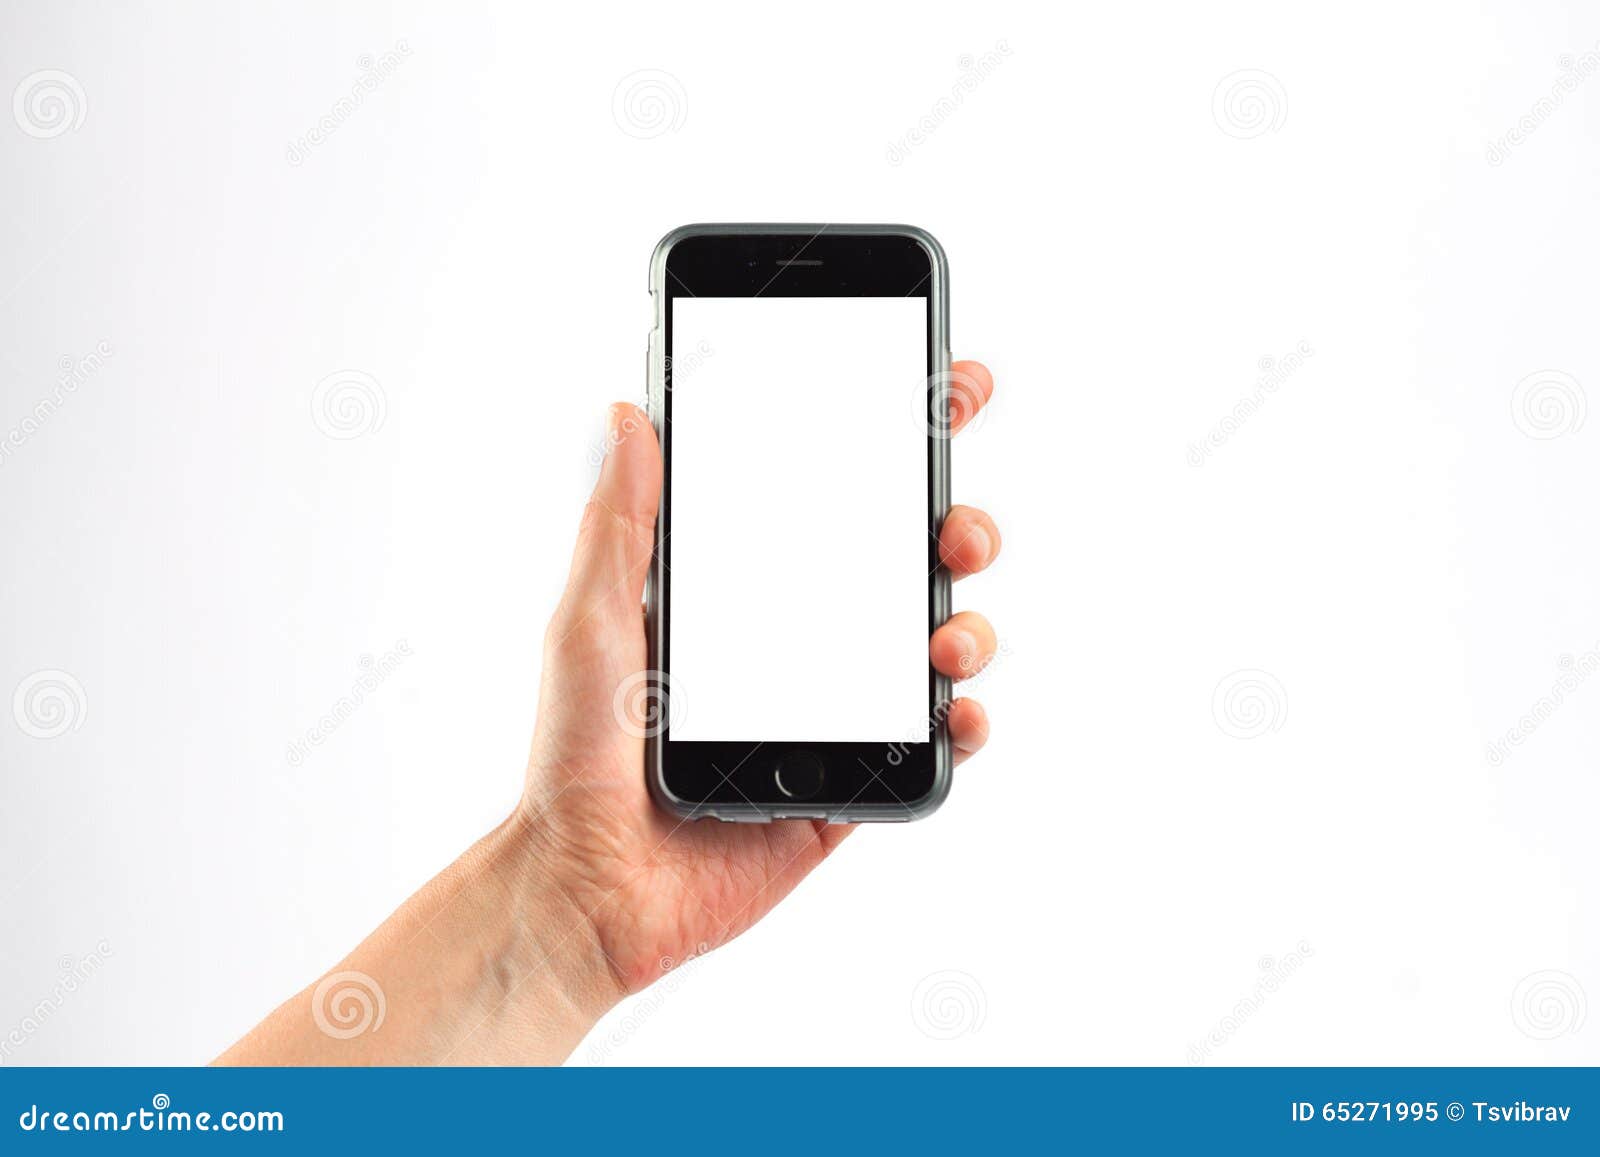 Держит телефон. Рука держит телефон вертикально. Рука держит смартфон горизонтально. Телефон в руке вертикально. Горизонтальными в вертикальном в телефоне